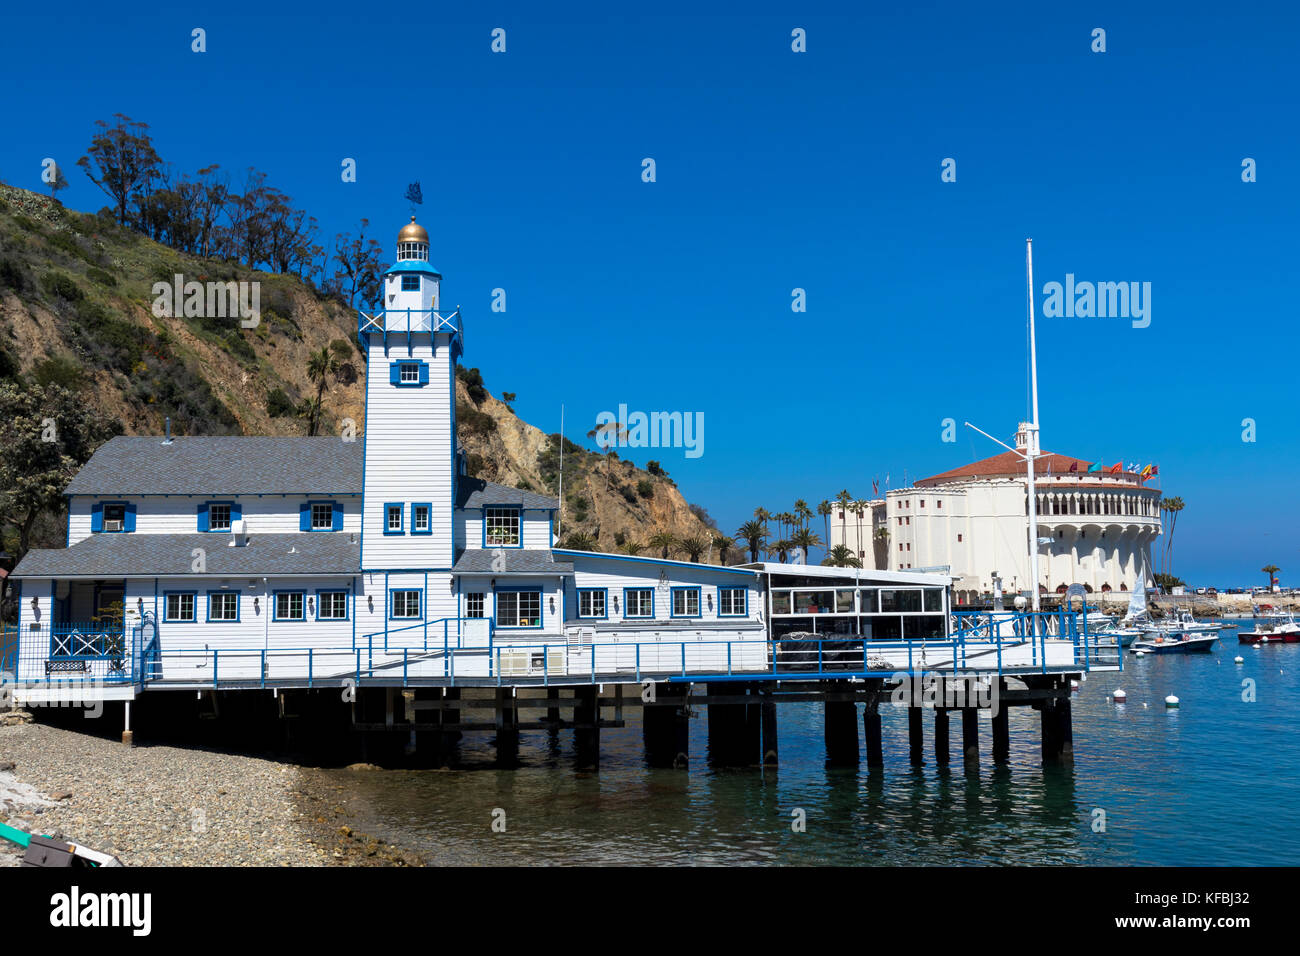 Ciel bleu vif au-dessus du Catalina Island Yacht Club et du casino Catalina. Californie États-Unis Banque D'Images